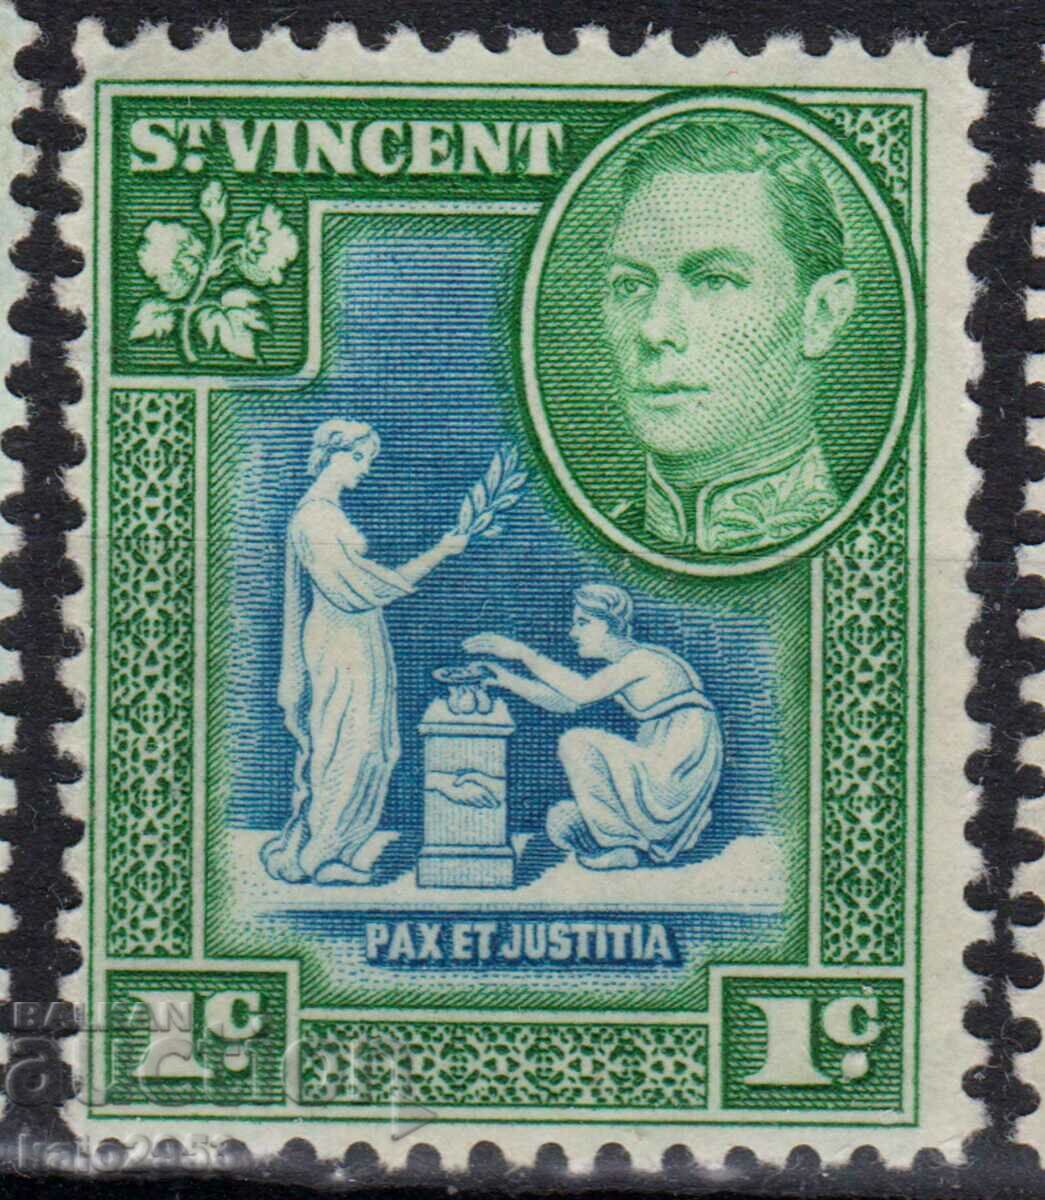 GB/St.Vincent-1938-KG VI+Motive ale naturii coloniale, MLH